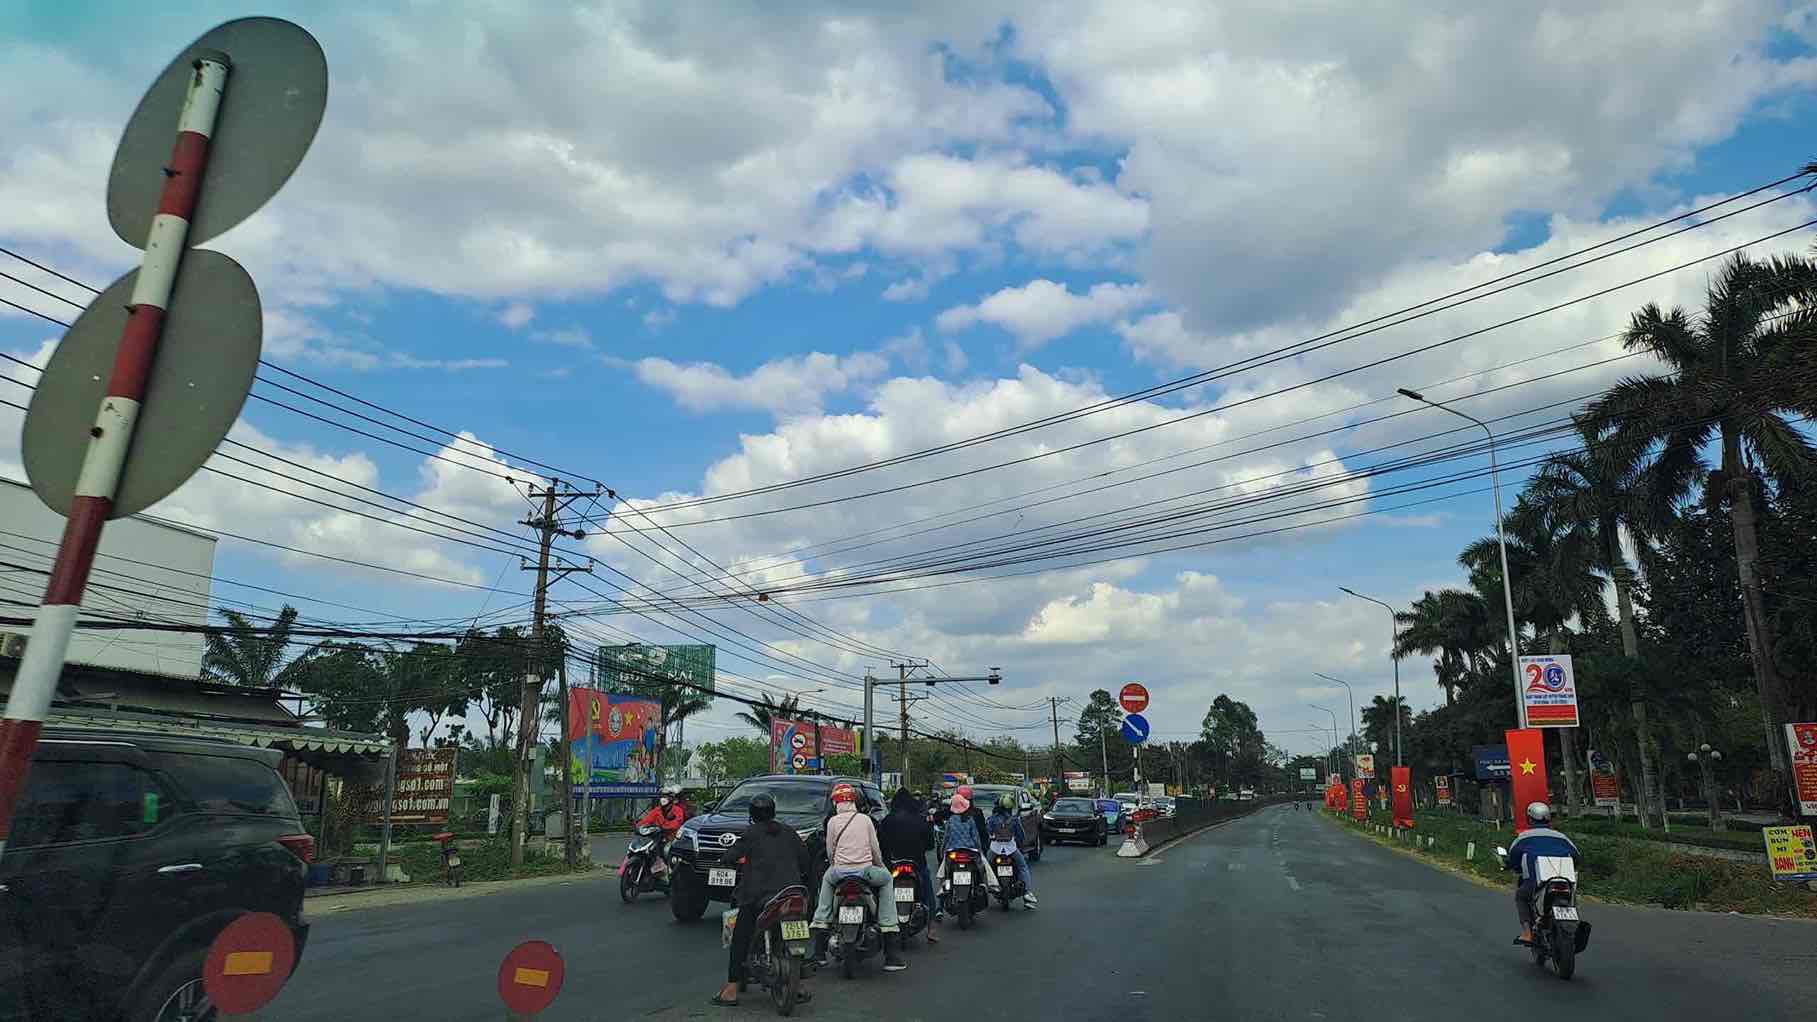 Quốc lộ 1A đoạn qua thị trấn Trảng Bom huyện Trảng Bom, tỉnh Đồng Nai xe đông nhưng không kẹt xe. Ảnh: Trần Nguyên